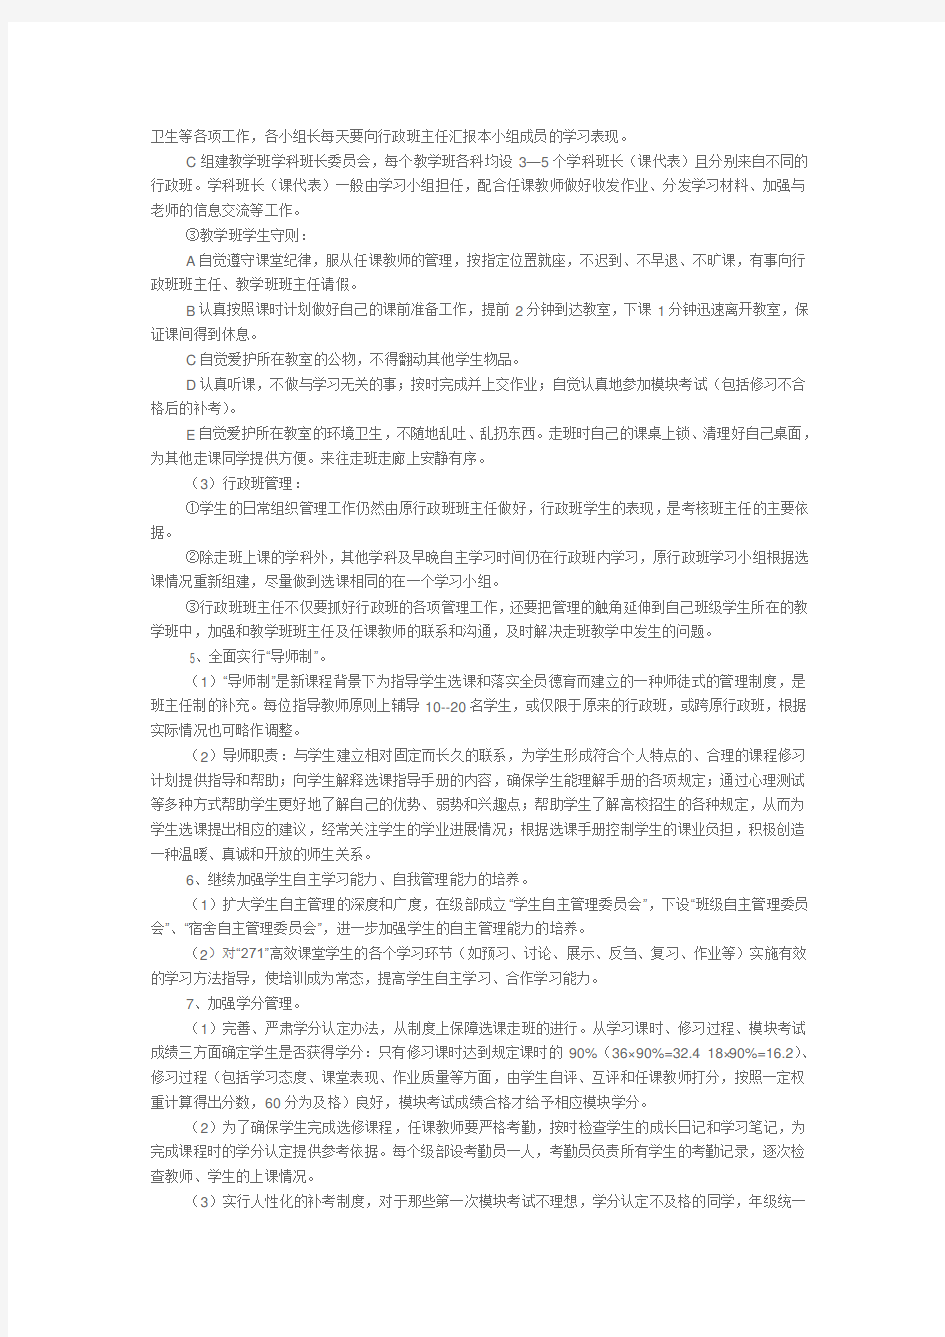 山东省昌乐二中选课走班指导方案——走班管理方案